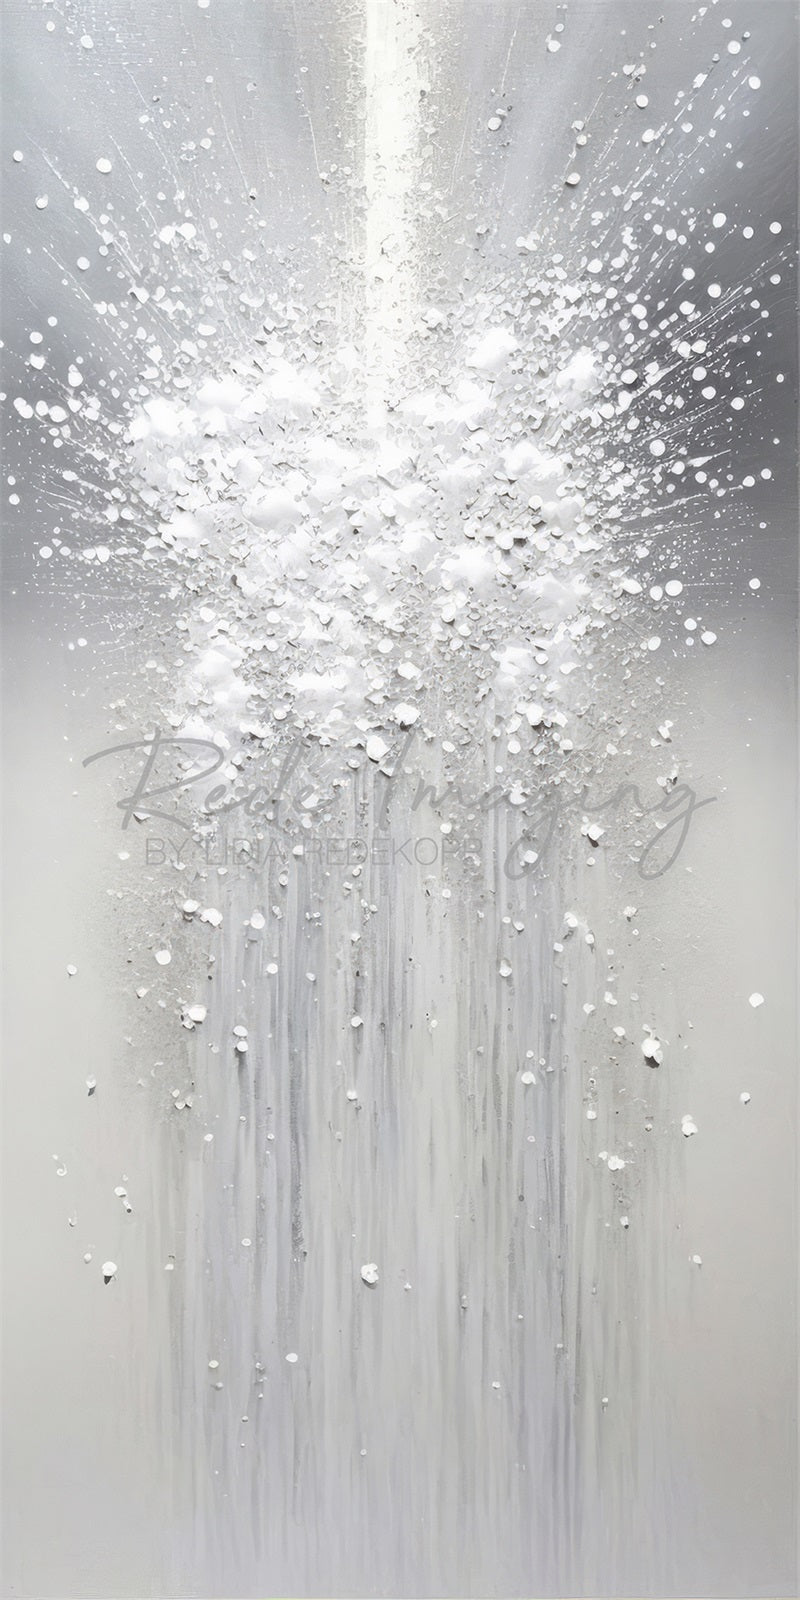 Kate Balayage Blanc Abstrait Toile de fond conçue par Lidia Redekopp